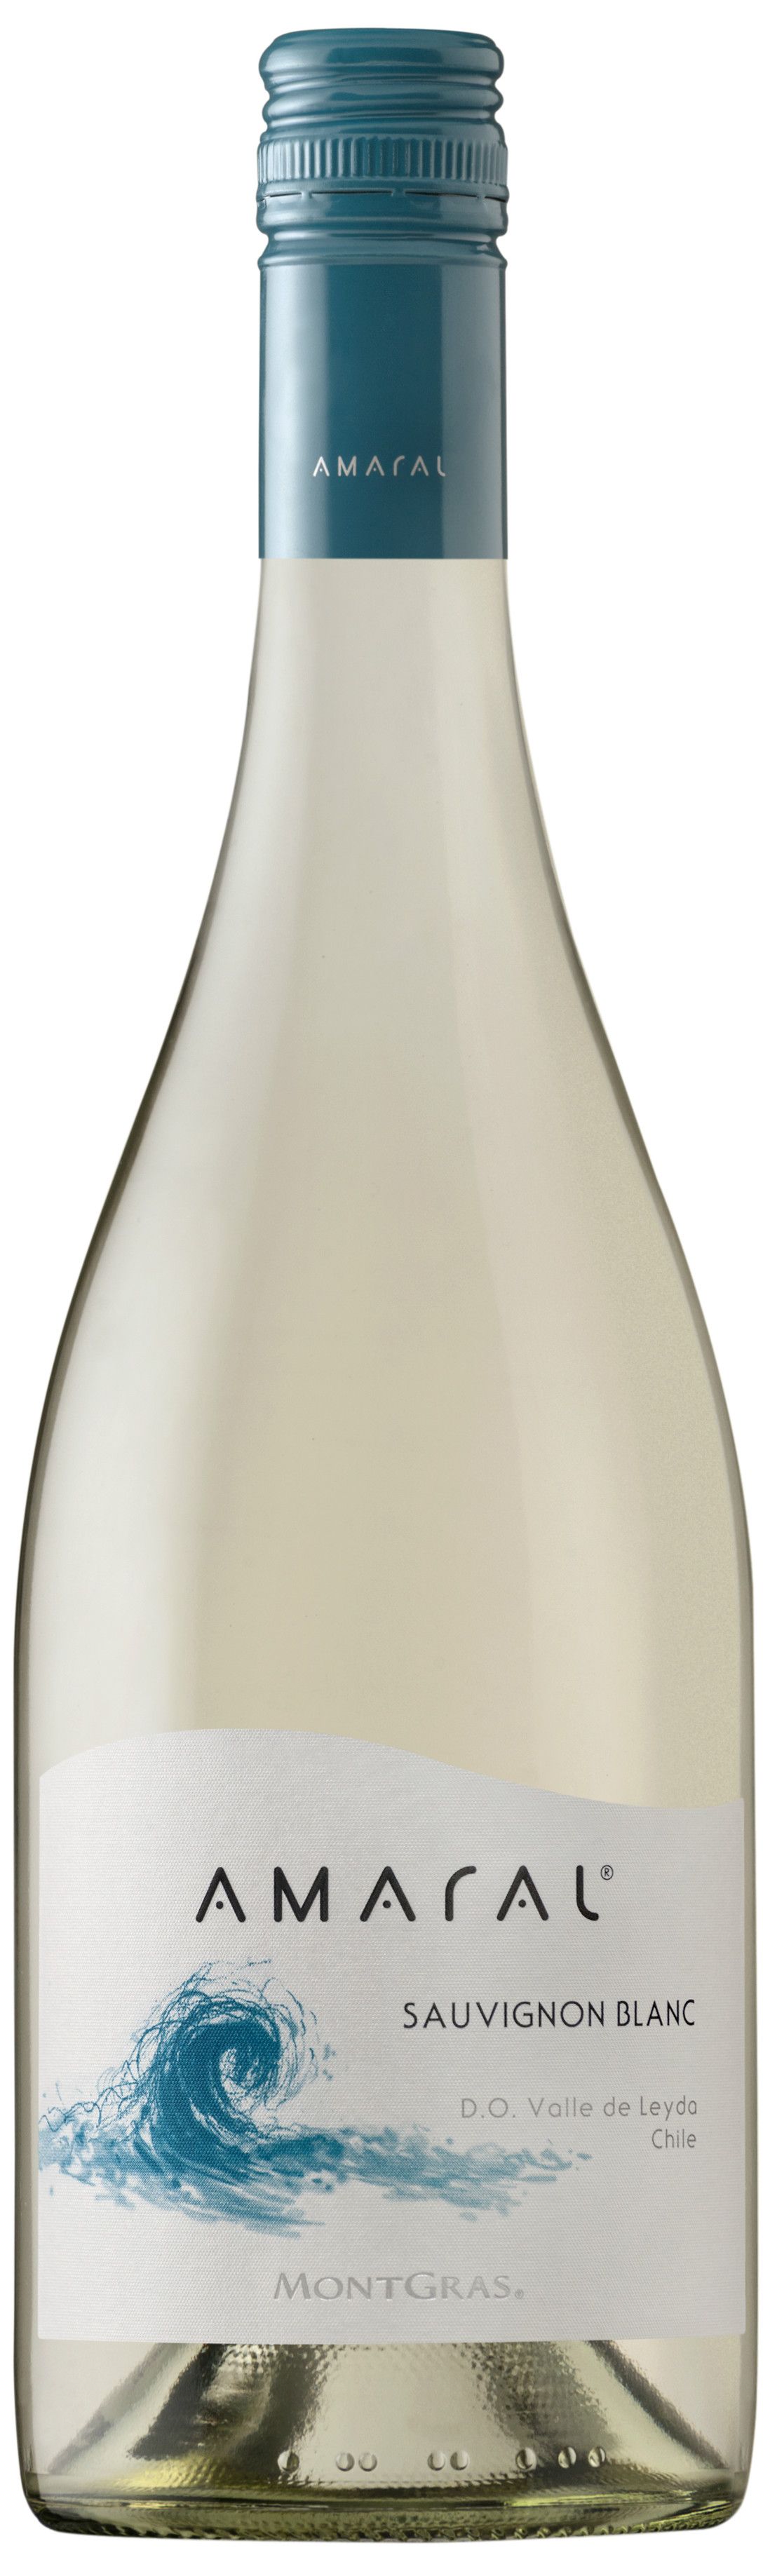 Montgras, Amaral Sauvignon Blanc, 2015